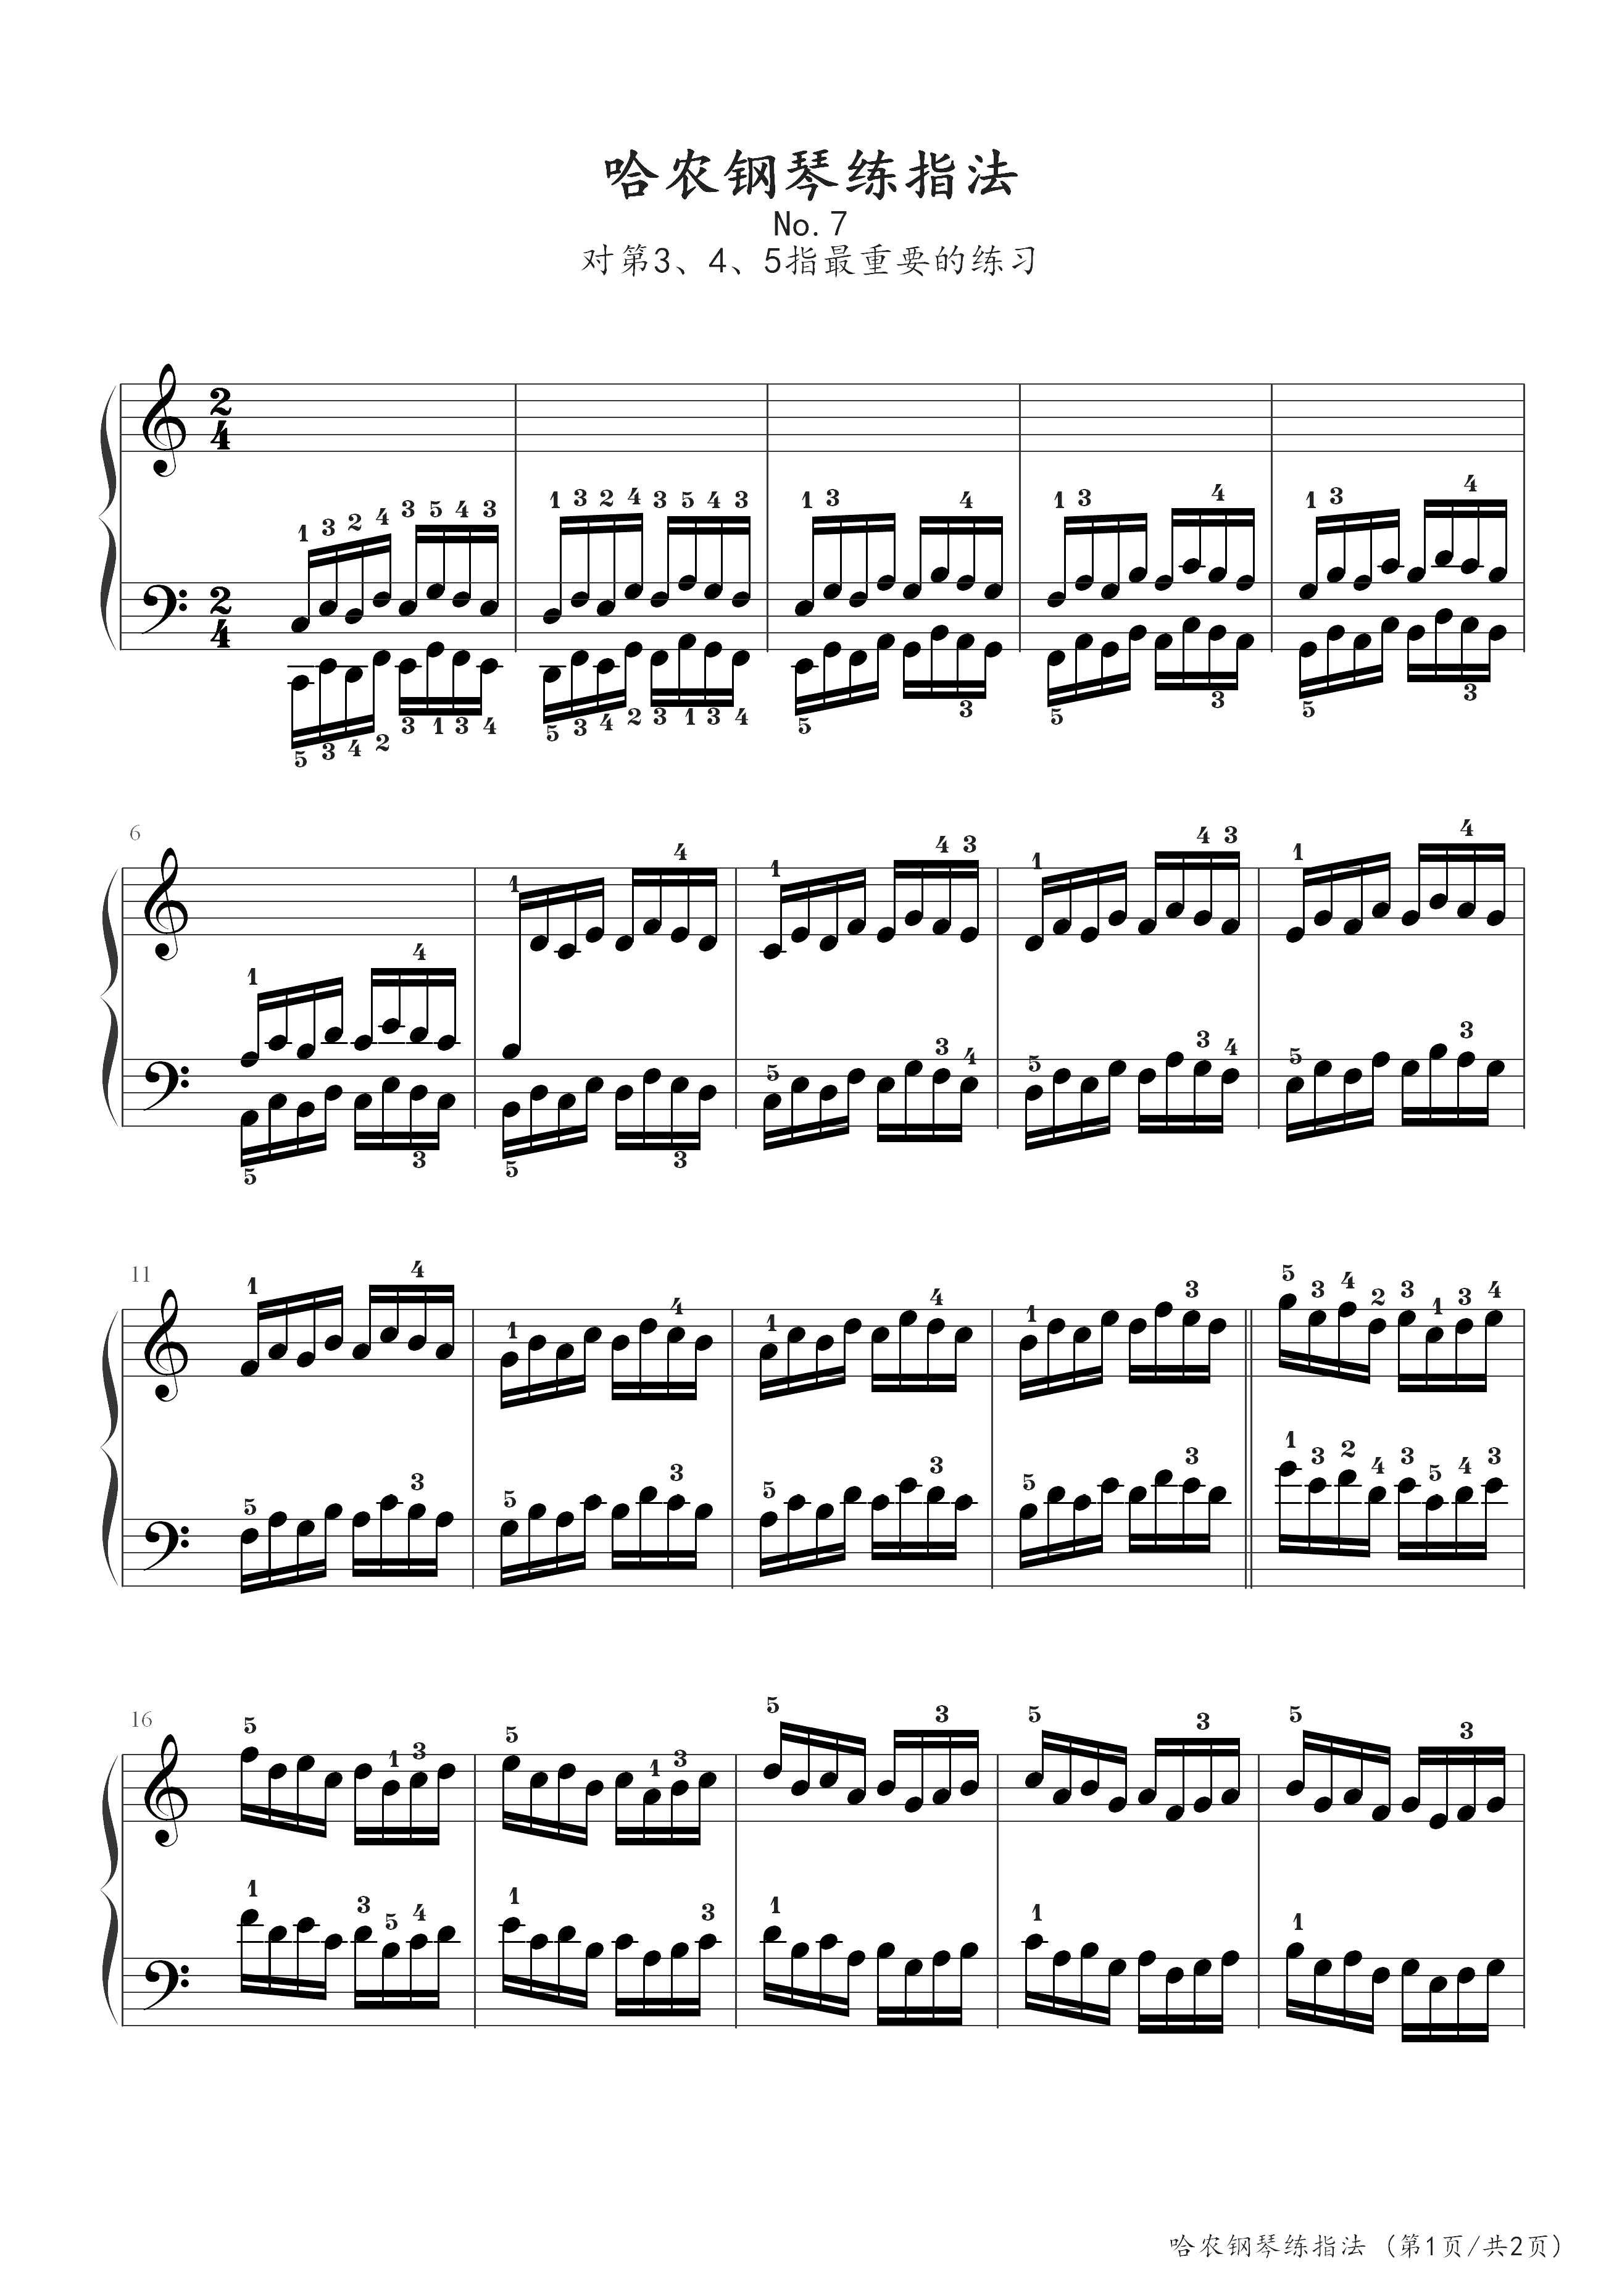 哈农钢琴练指法7-哈农-c调-古典钢琴五线谱